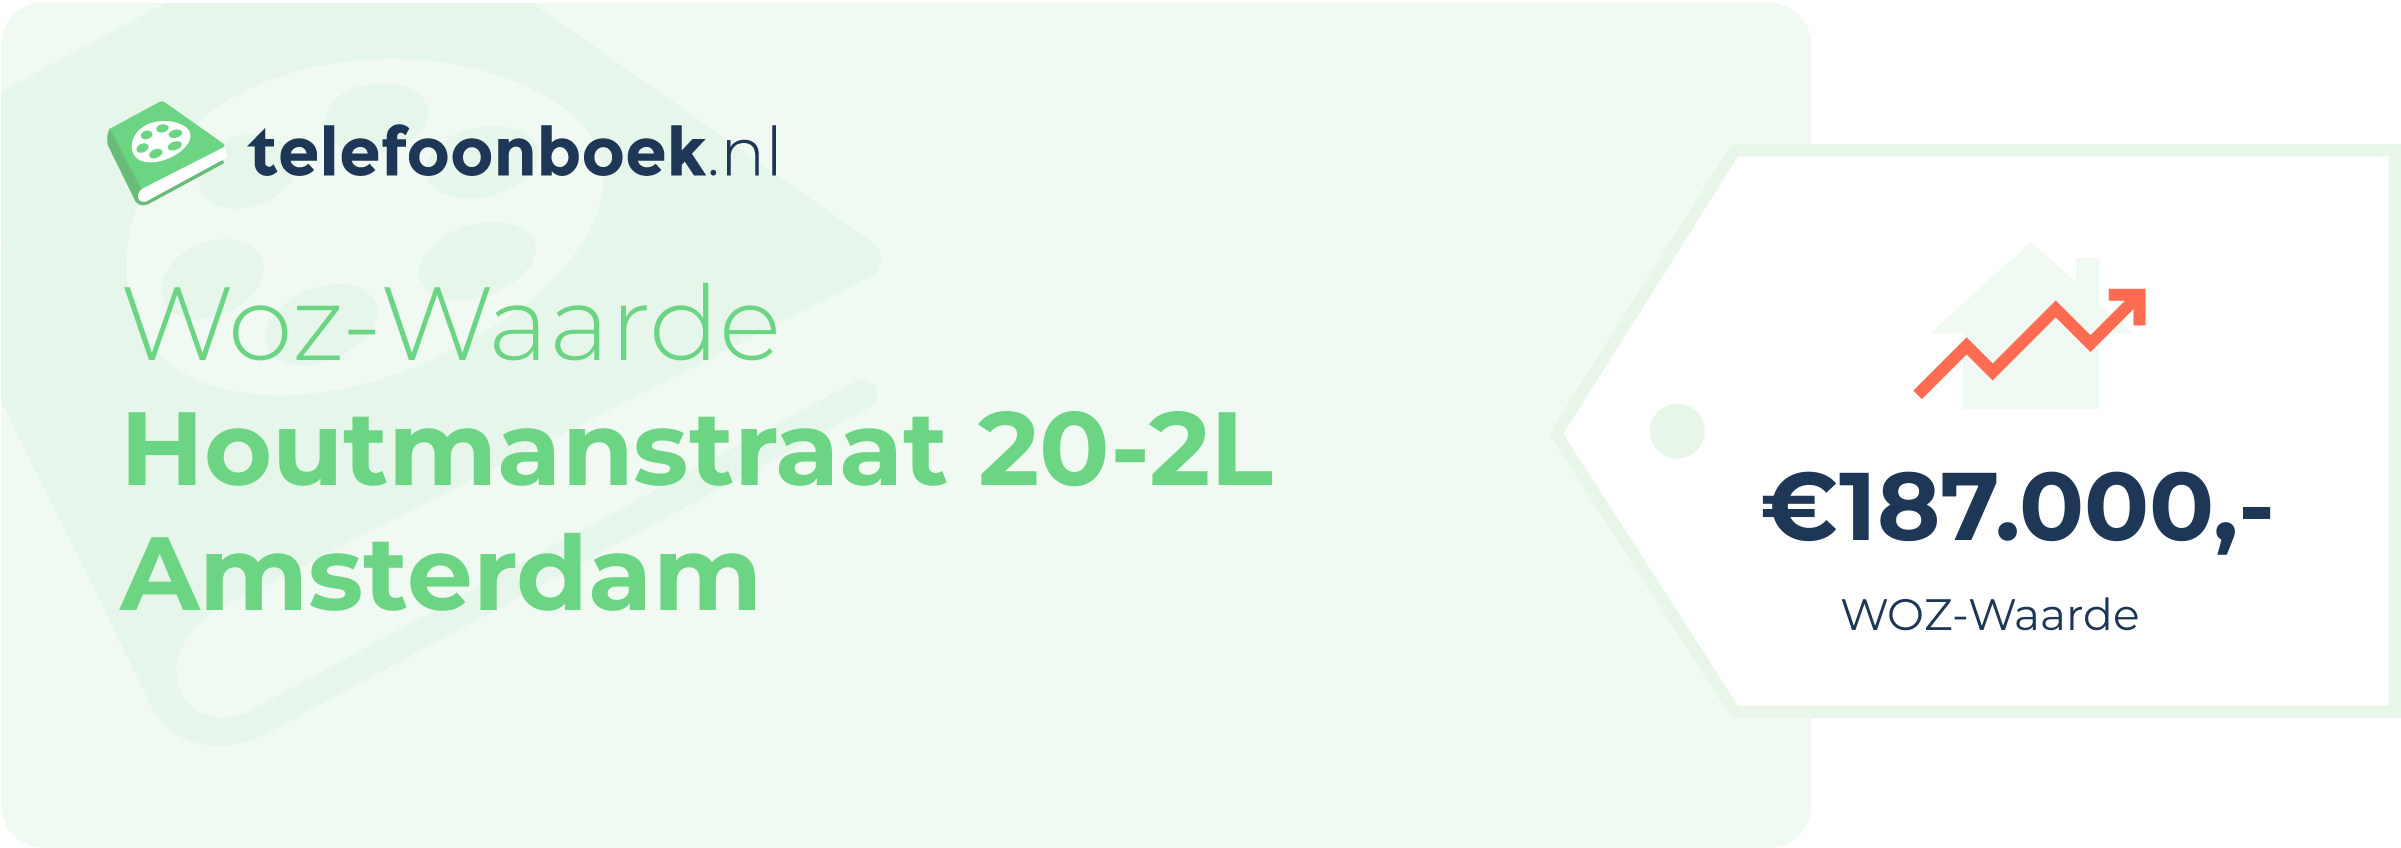 WOZ-waarde Houtmanstraat 20-2L Amsterdam